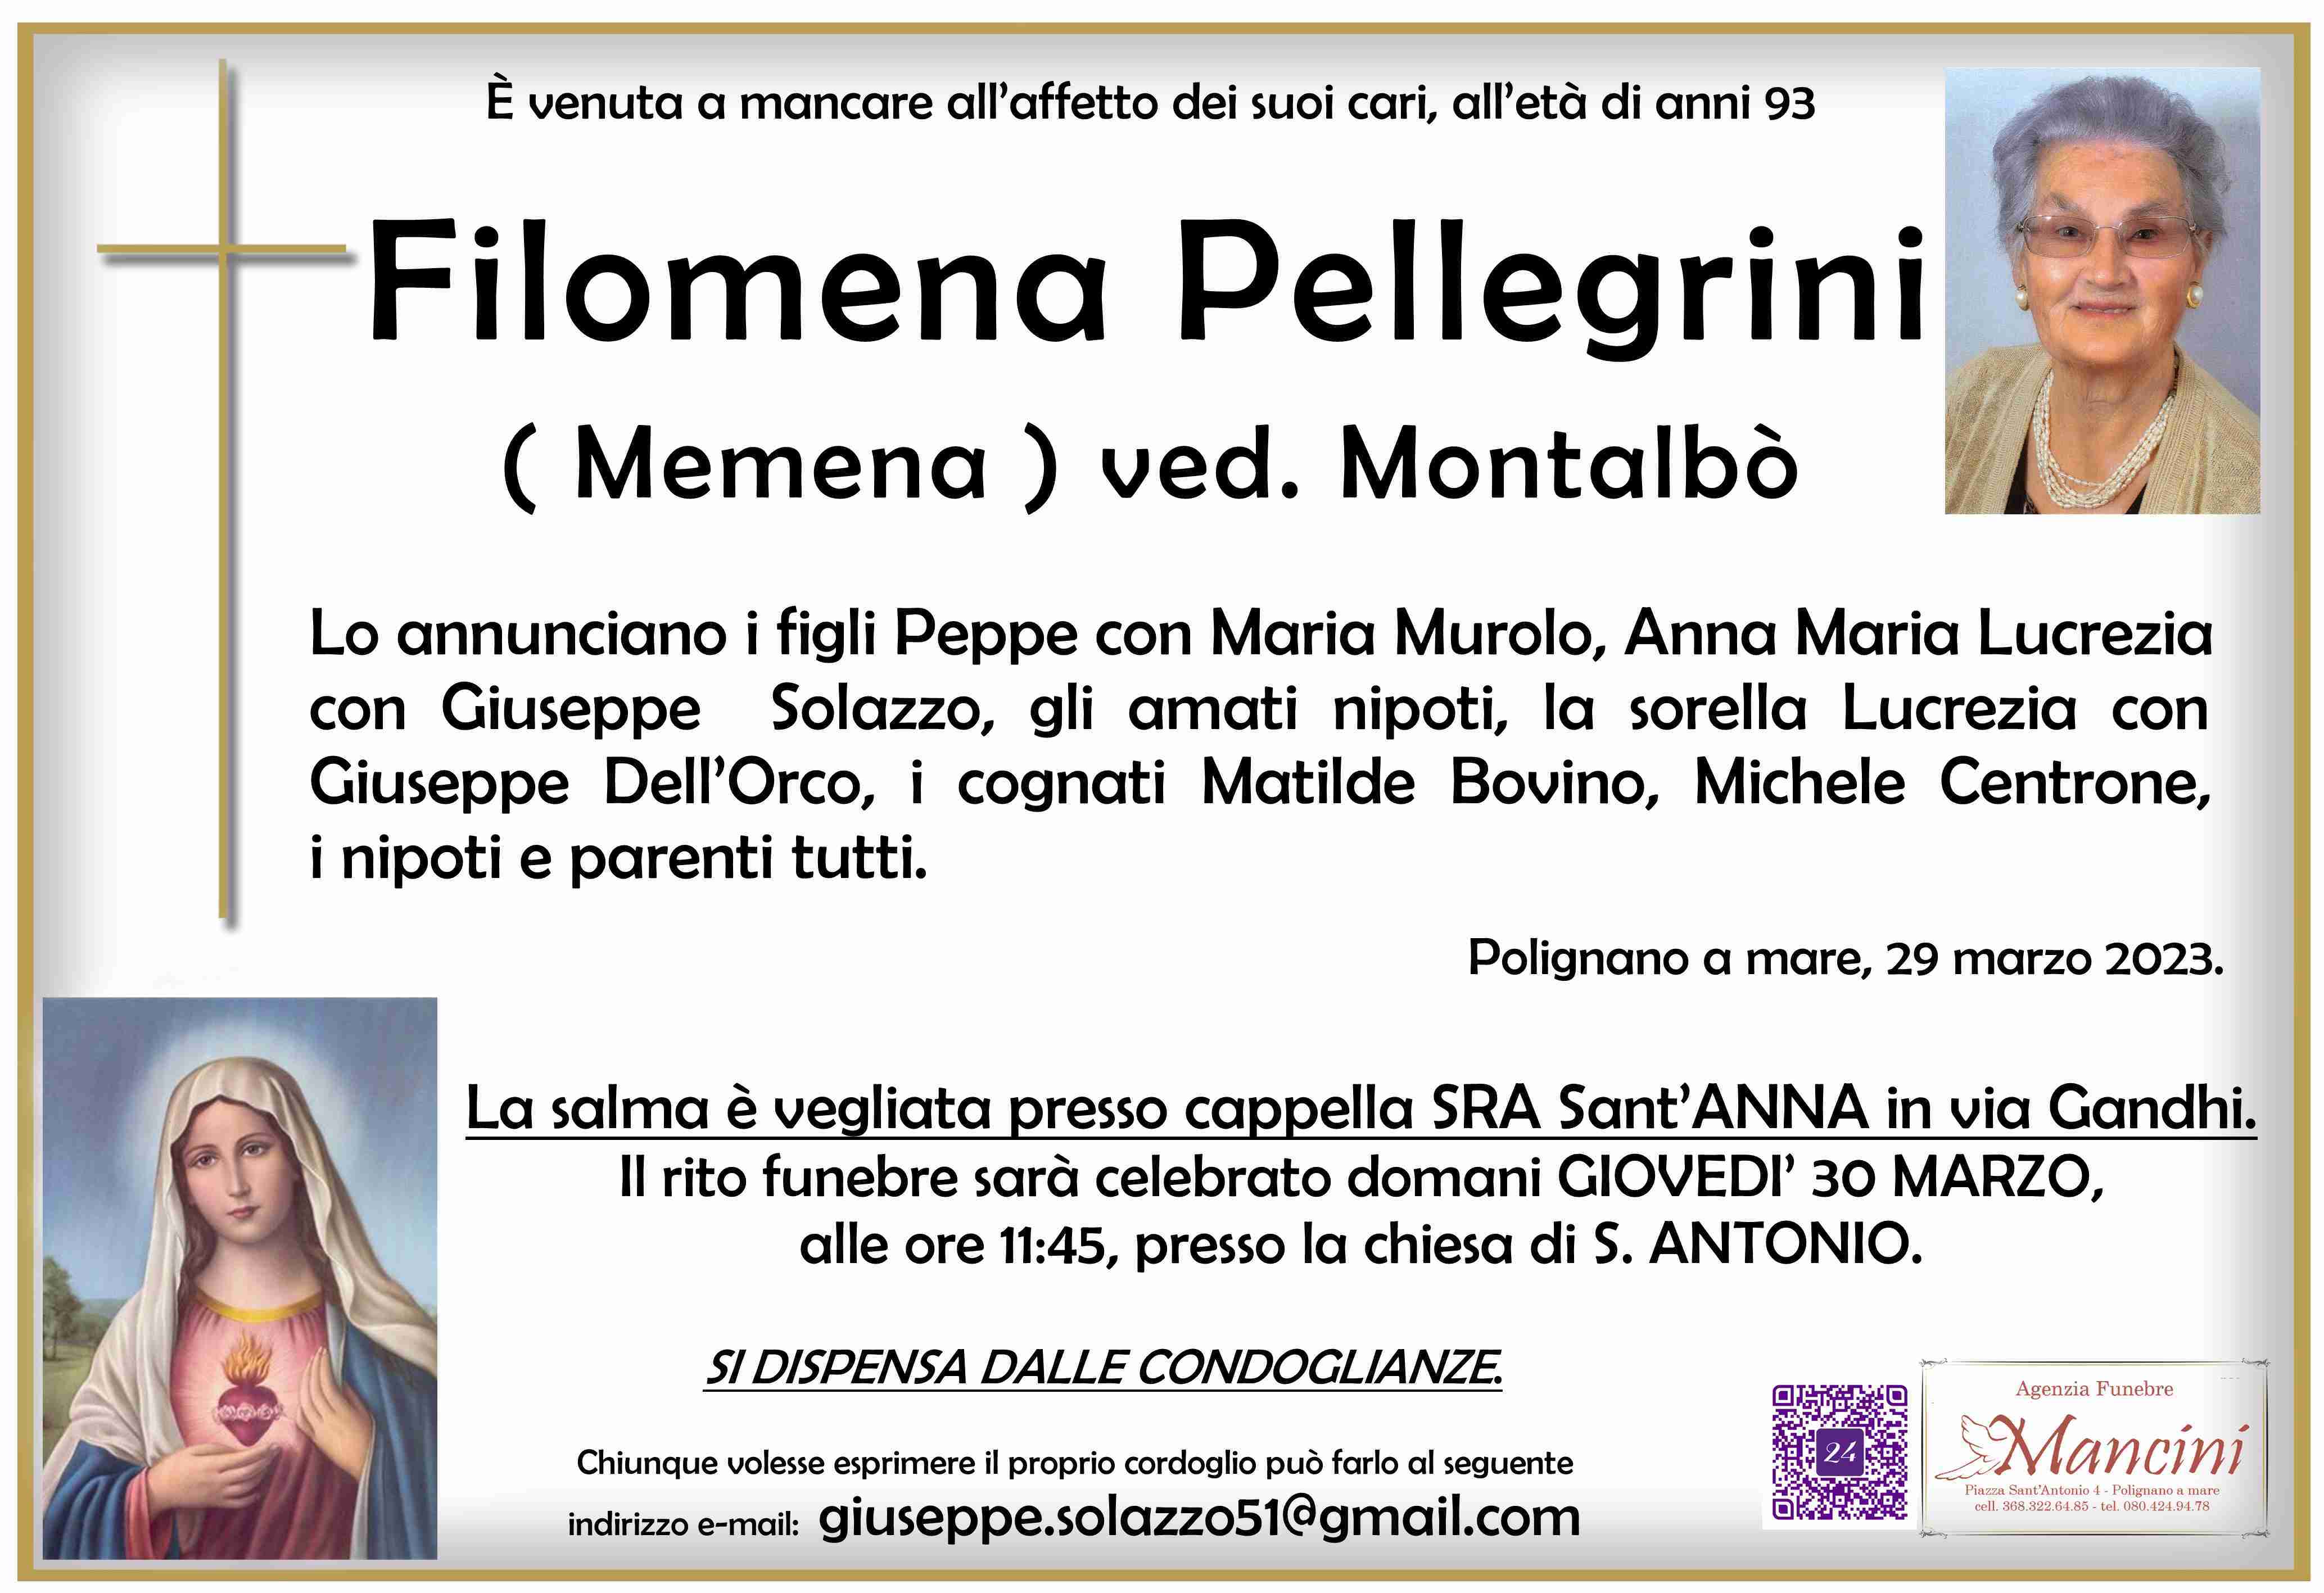 Filomena Pellegrini